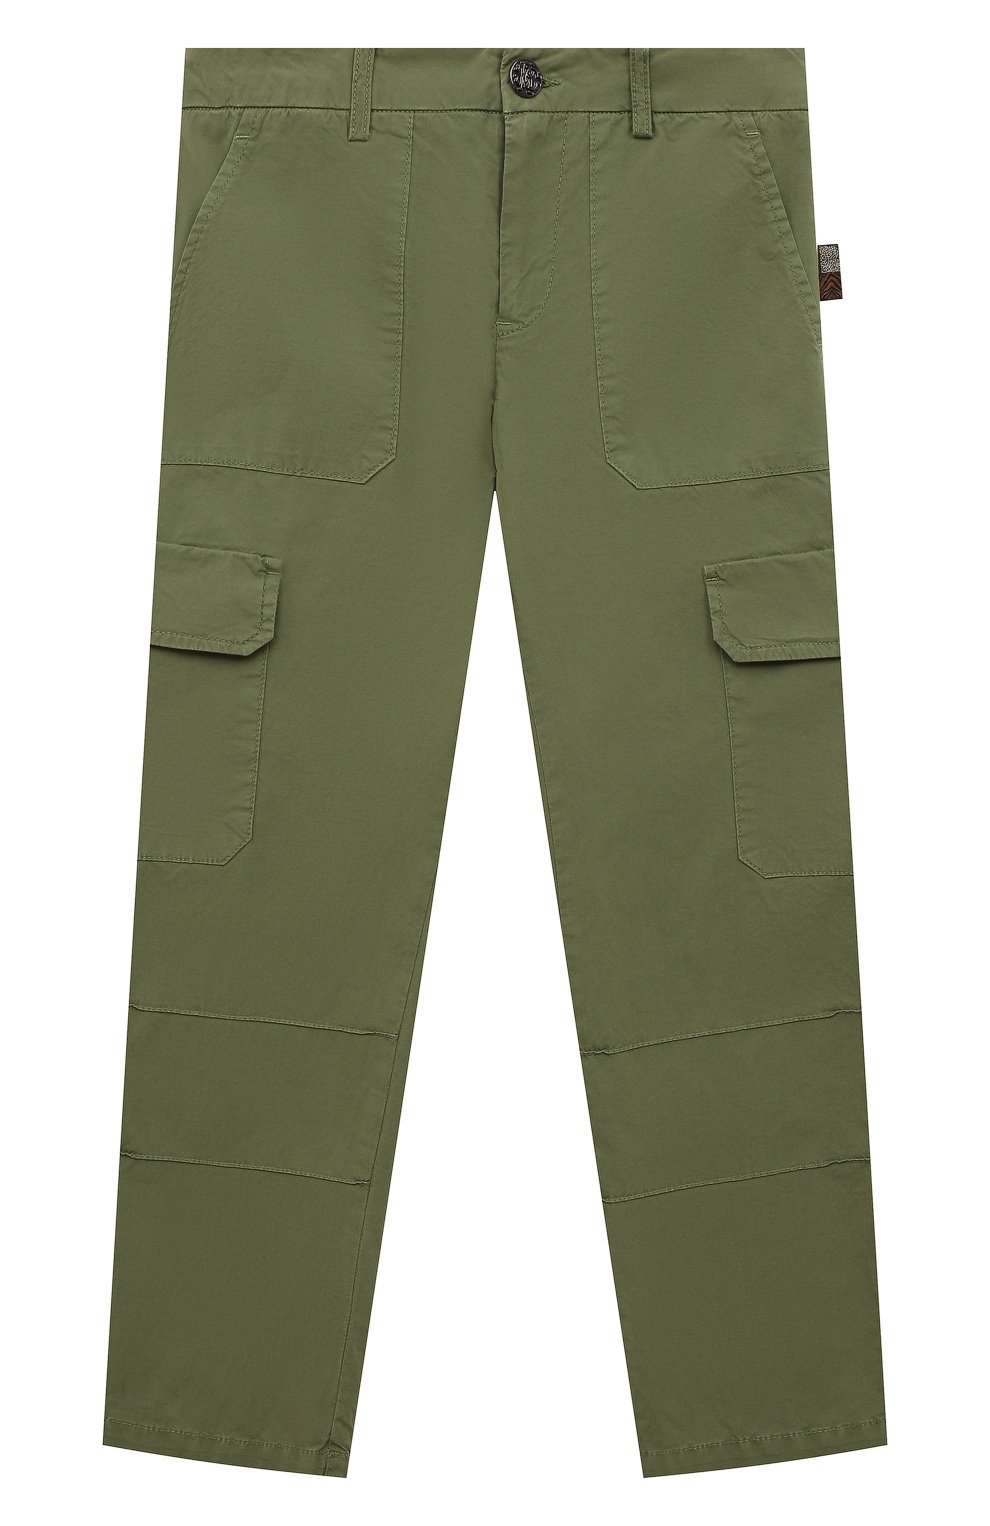 Хлопковые брюки Roberto Cavalli QJT232/CE035/04A-10A